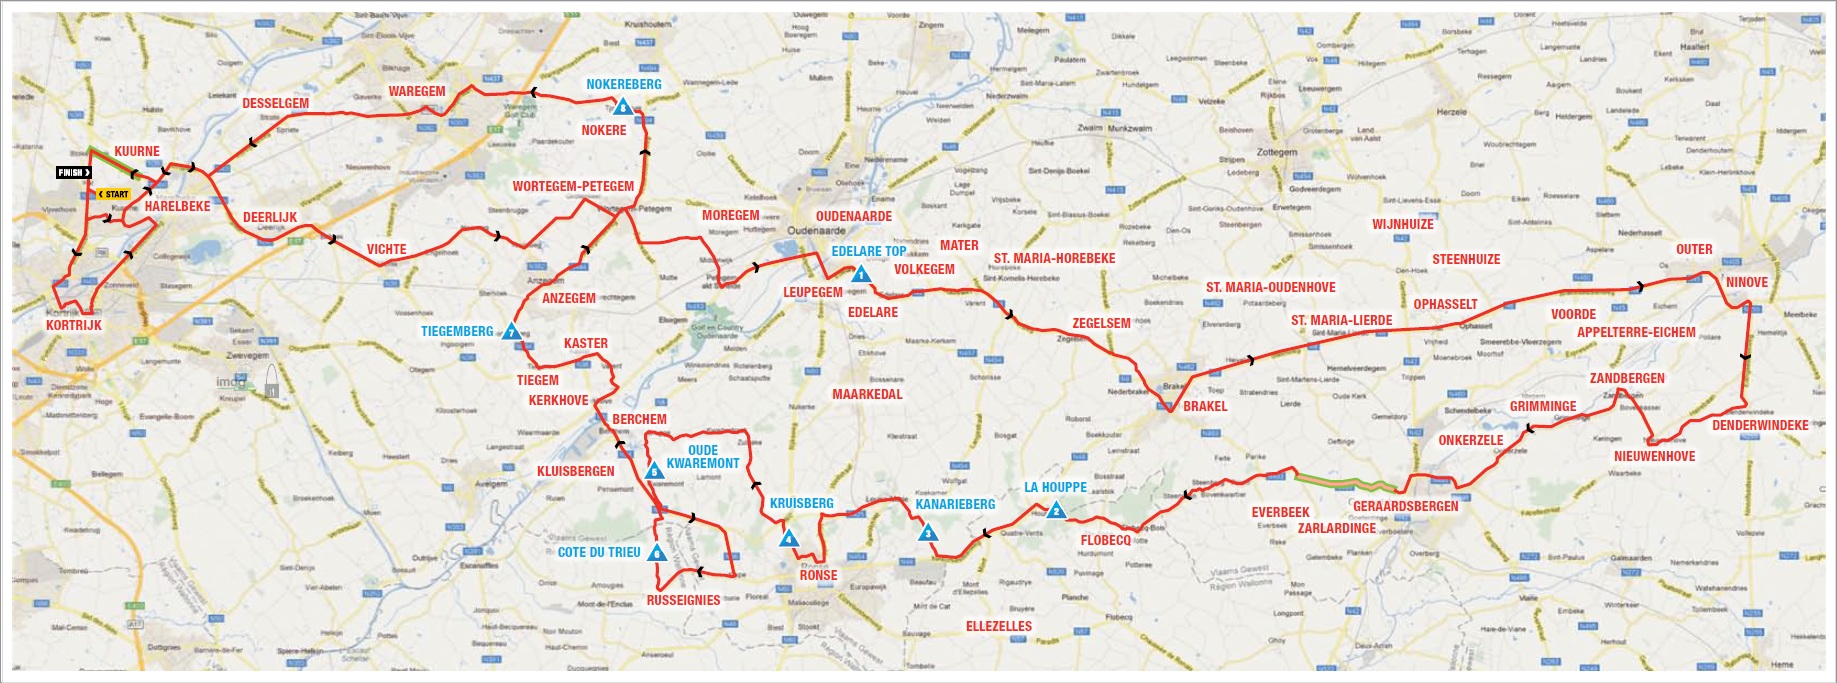 Streckenverlauf Kuurne-Brussel-Kuurne 2013